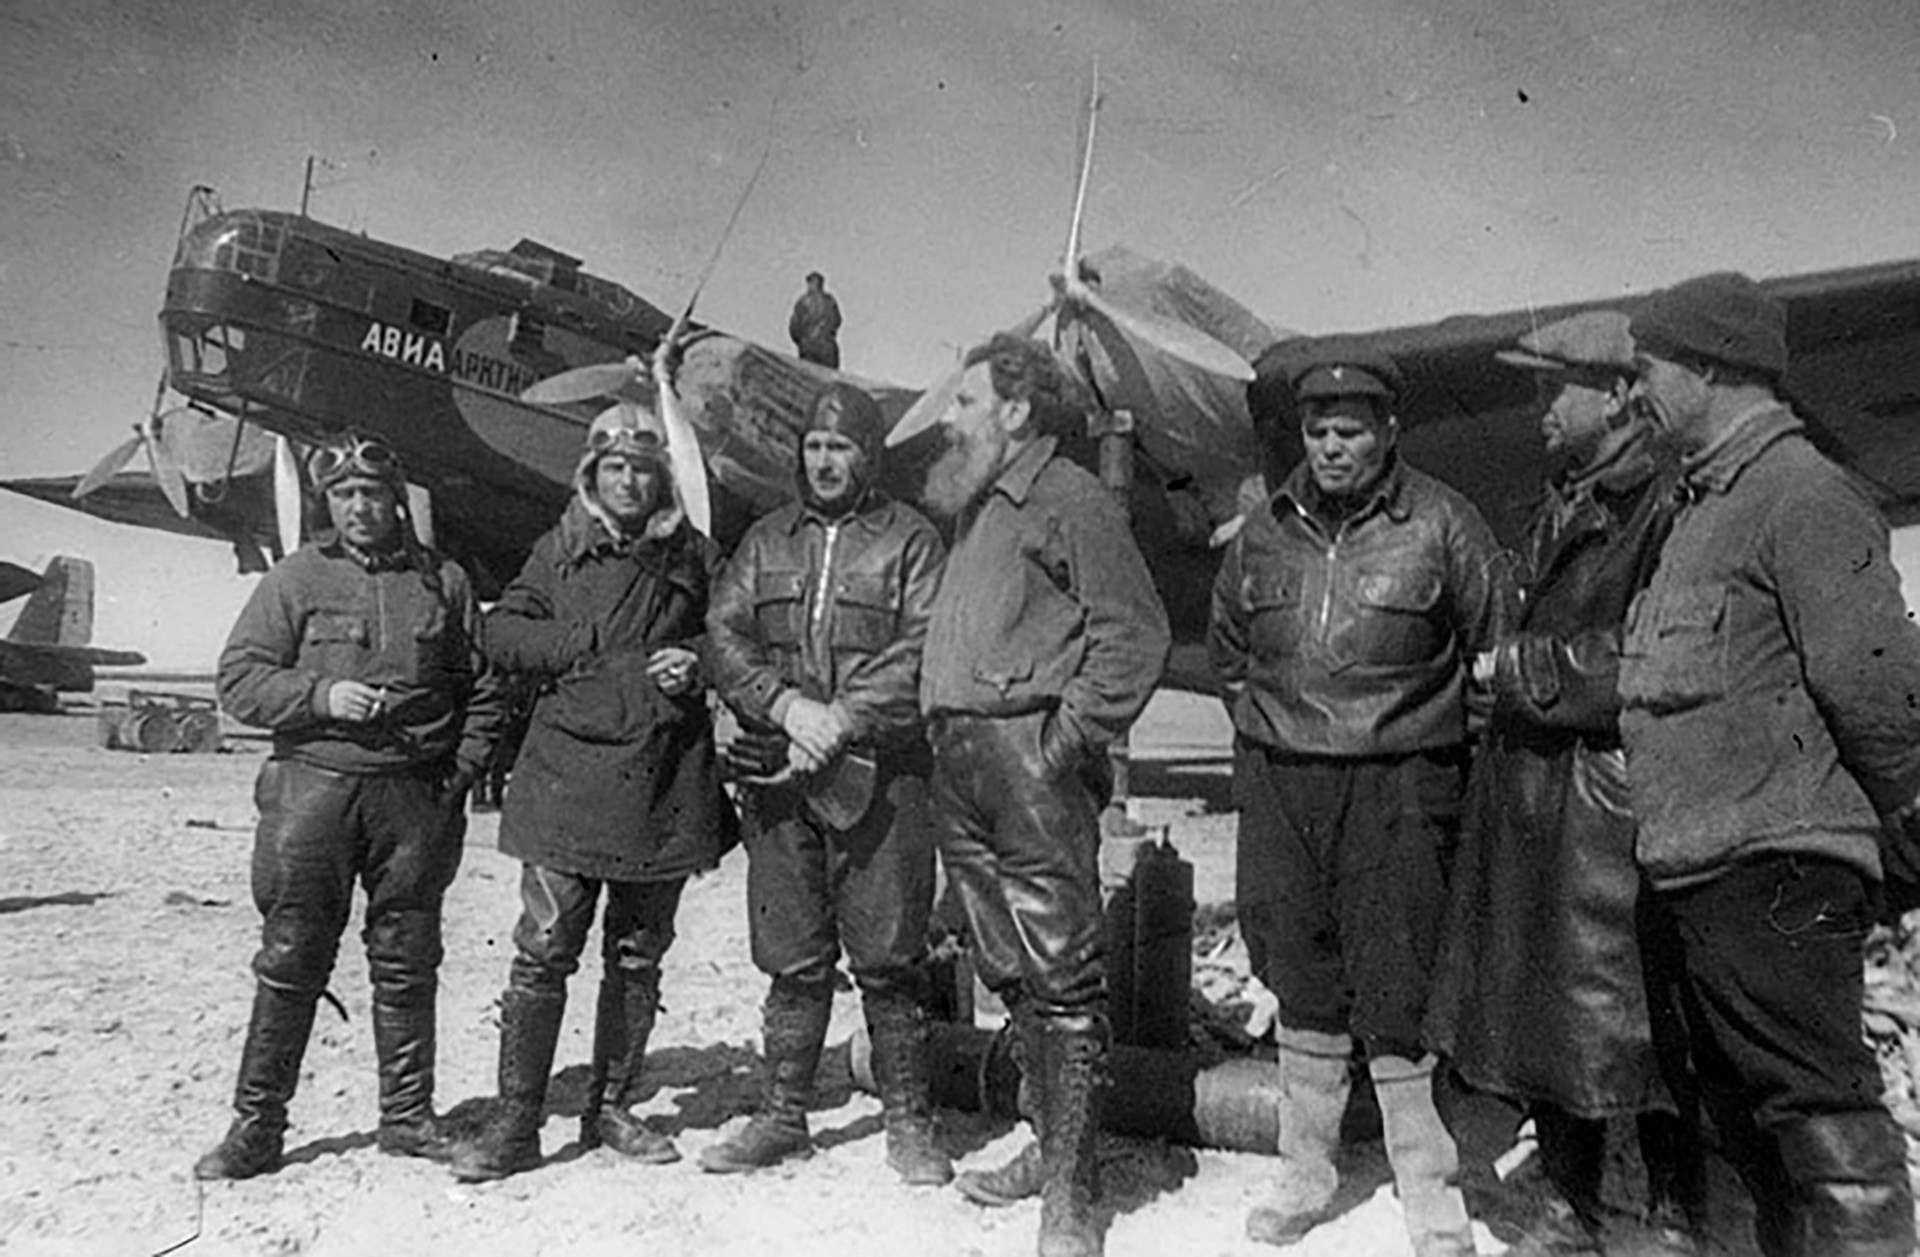 「北極点-1」探索の参加者、ロシア連邦英雄：I・スピーリン、M・シェヴェリョフ、 M・バーブシキン、O. シュミット, M・ヴォドプヤーノフ、A・アレクセエフ、V・モロコフ。